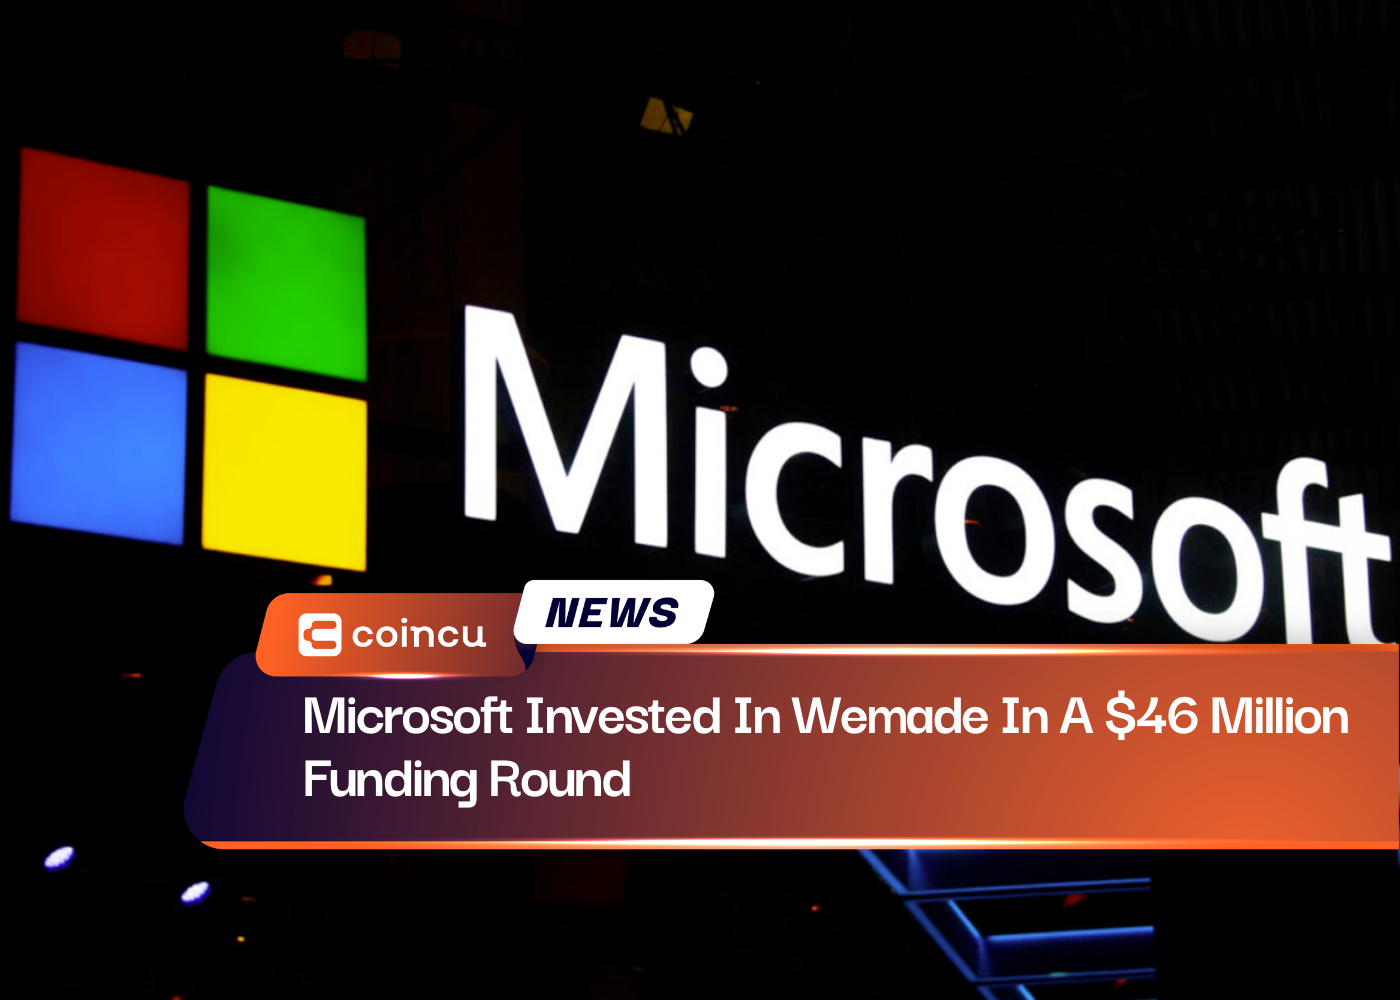 Microsoft инвестировала в Wemade раунд финансирования на сумму 46 миллионов долларов